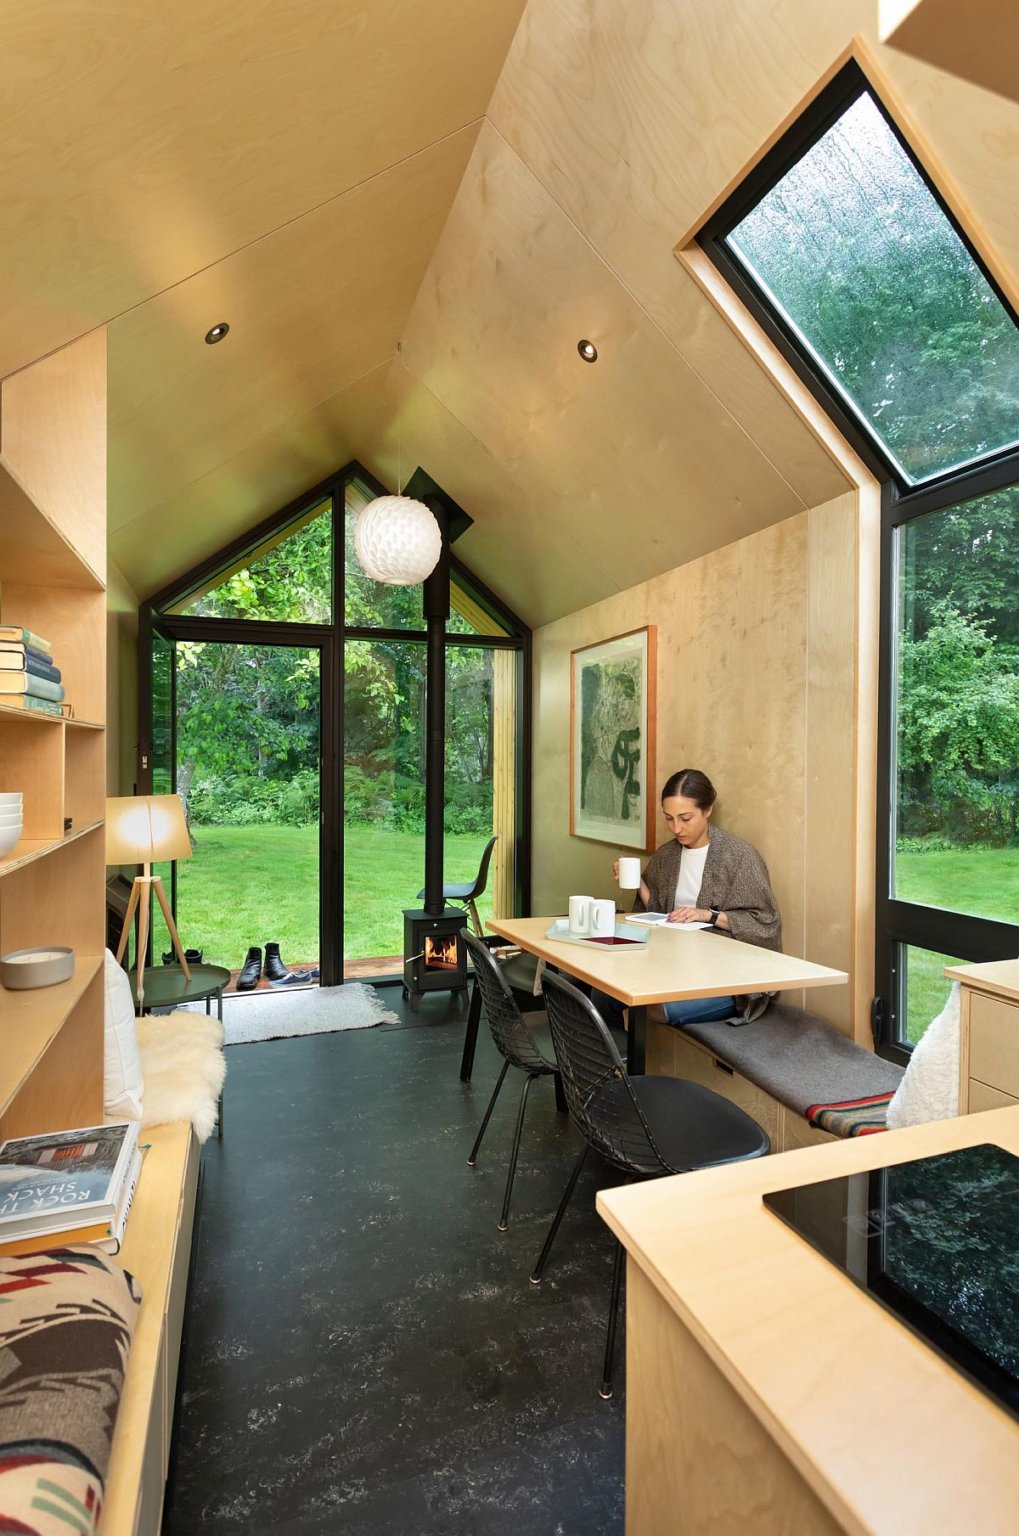 hình ảnh không gian bên trong nhà cabin với nội thất gỗ tuyết tùng màu sáng, người phụ nữ uống cà phê, làm việc